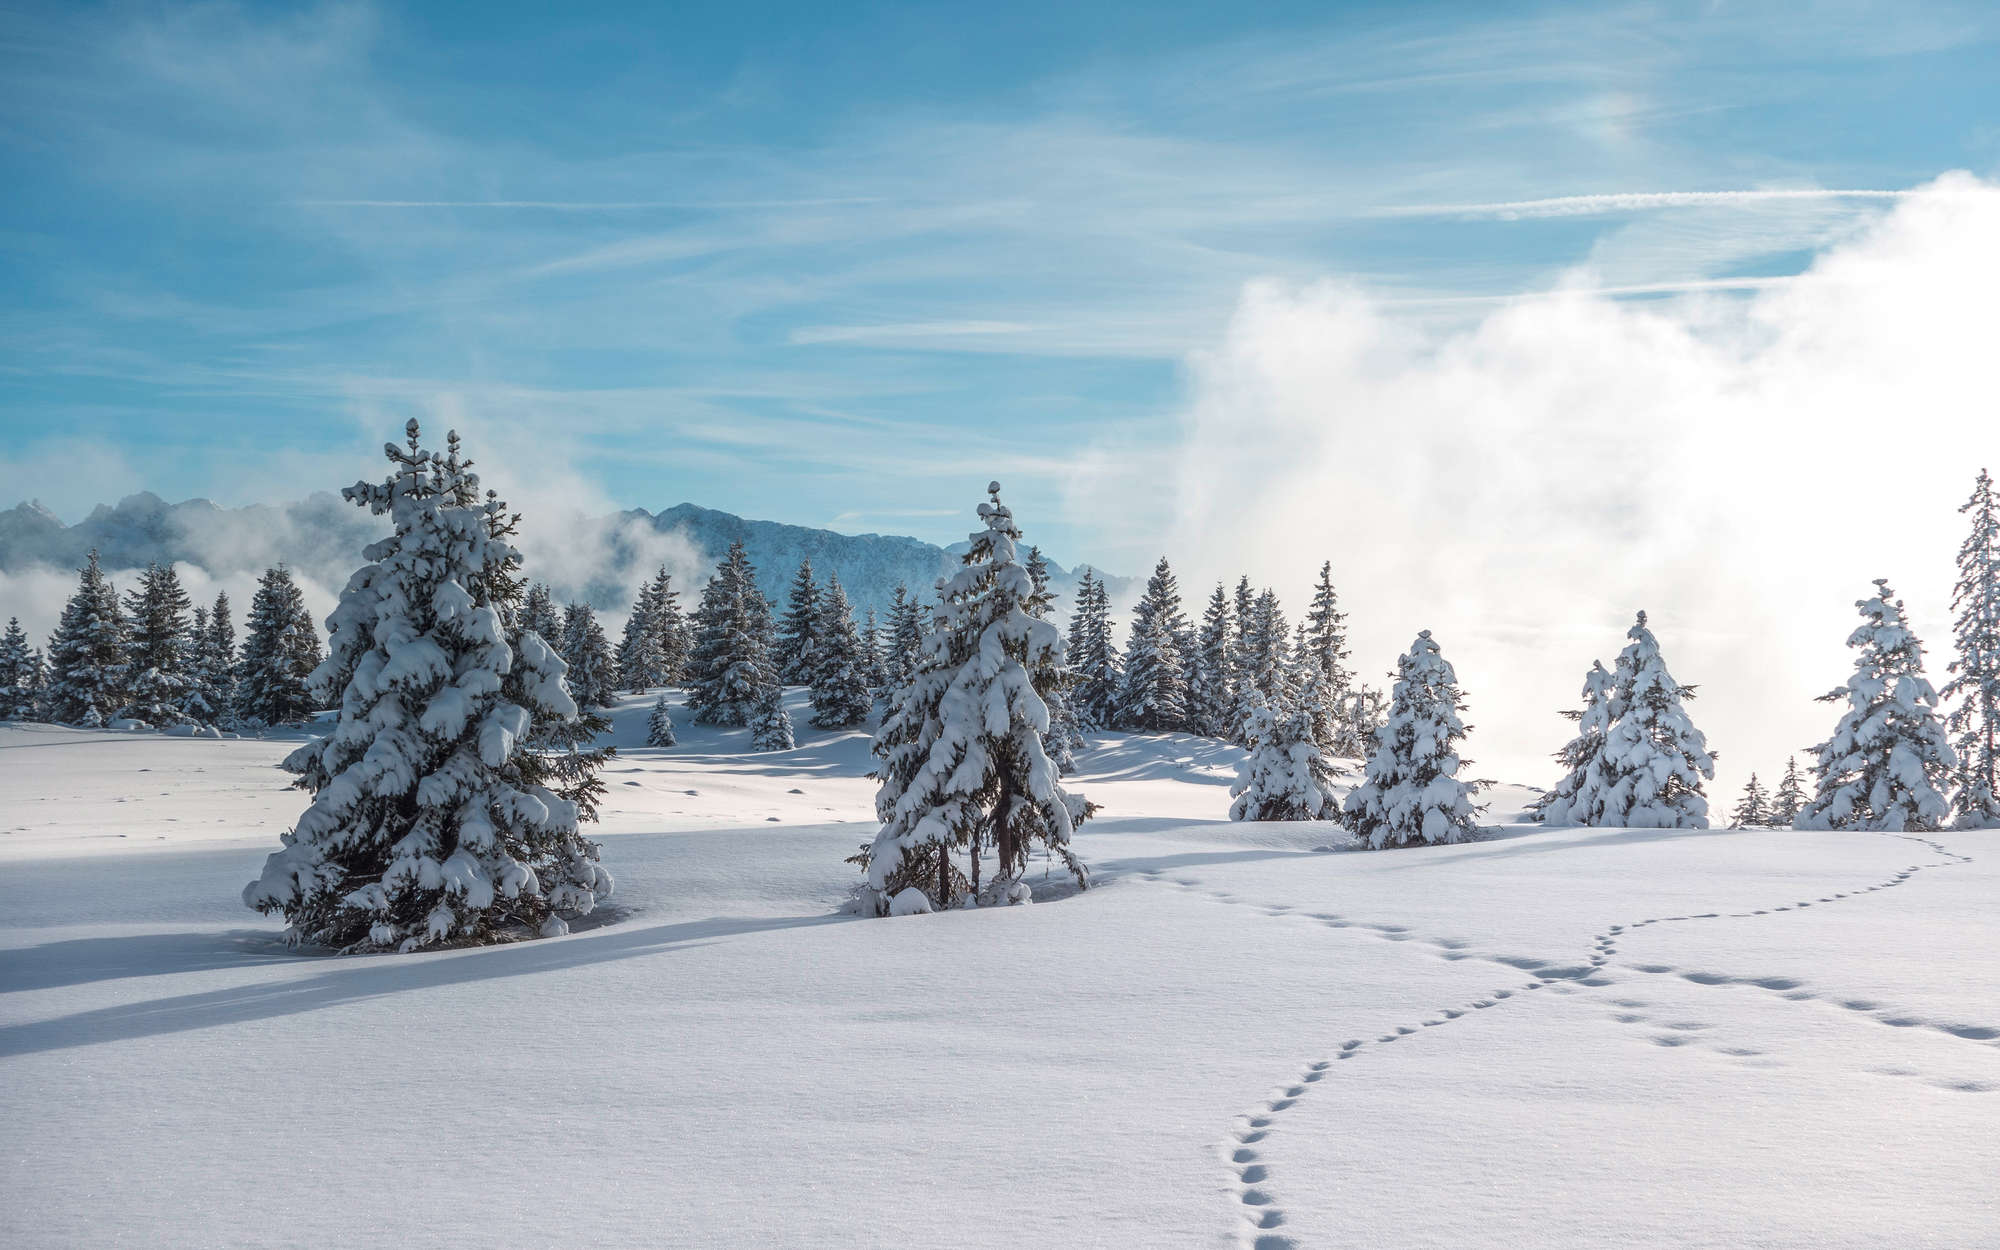             Digital behang sneeuw en voetafdrukken in het winterse bos - parelmoer glad vlies
        